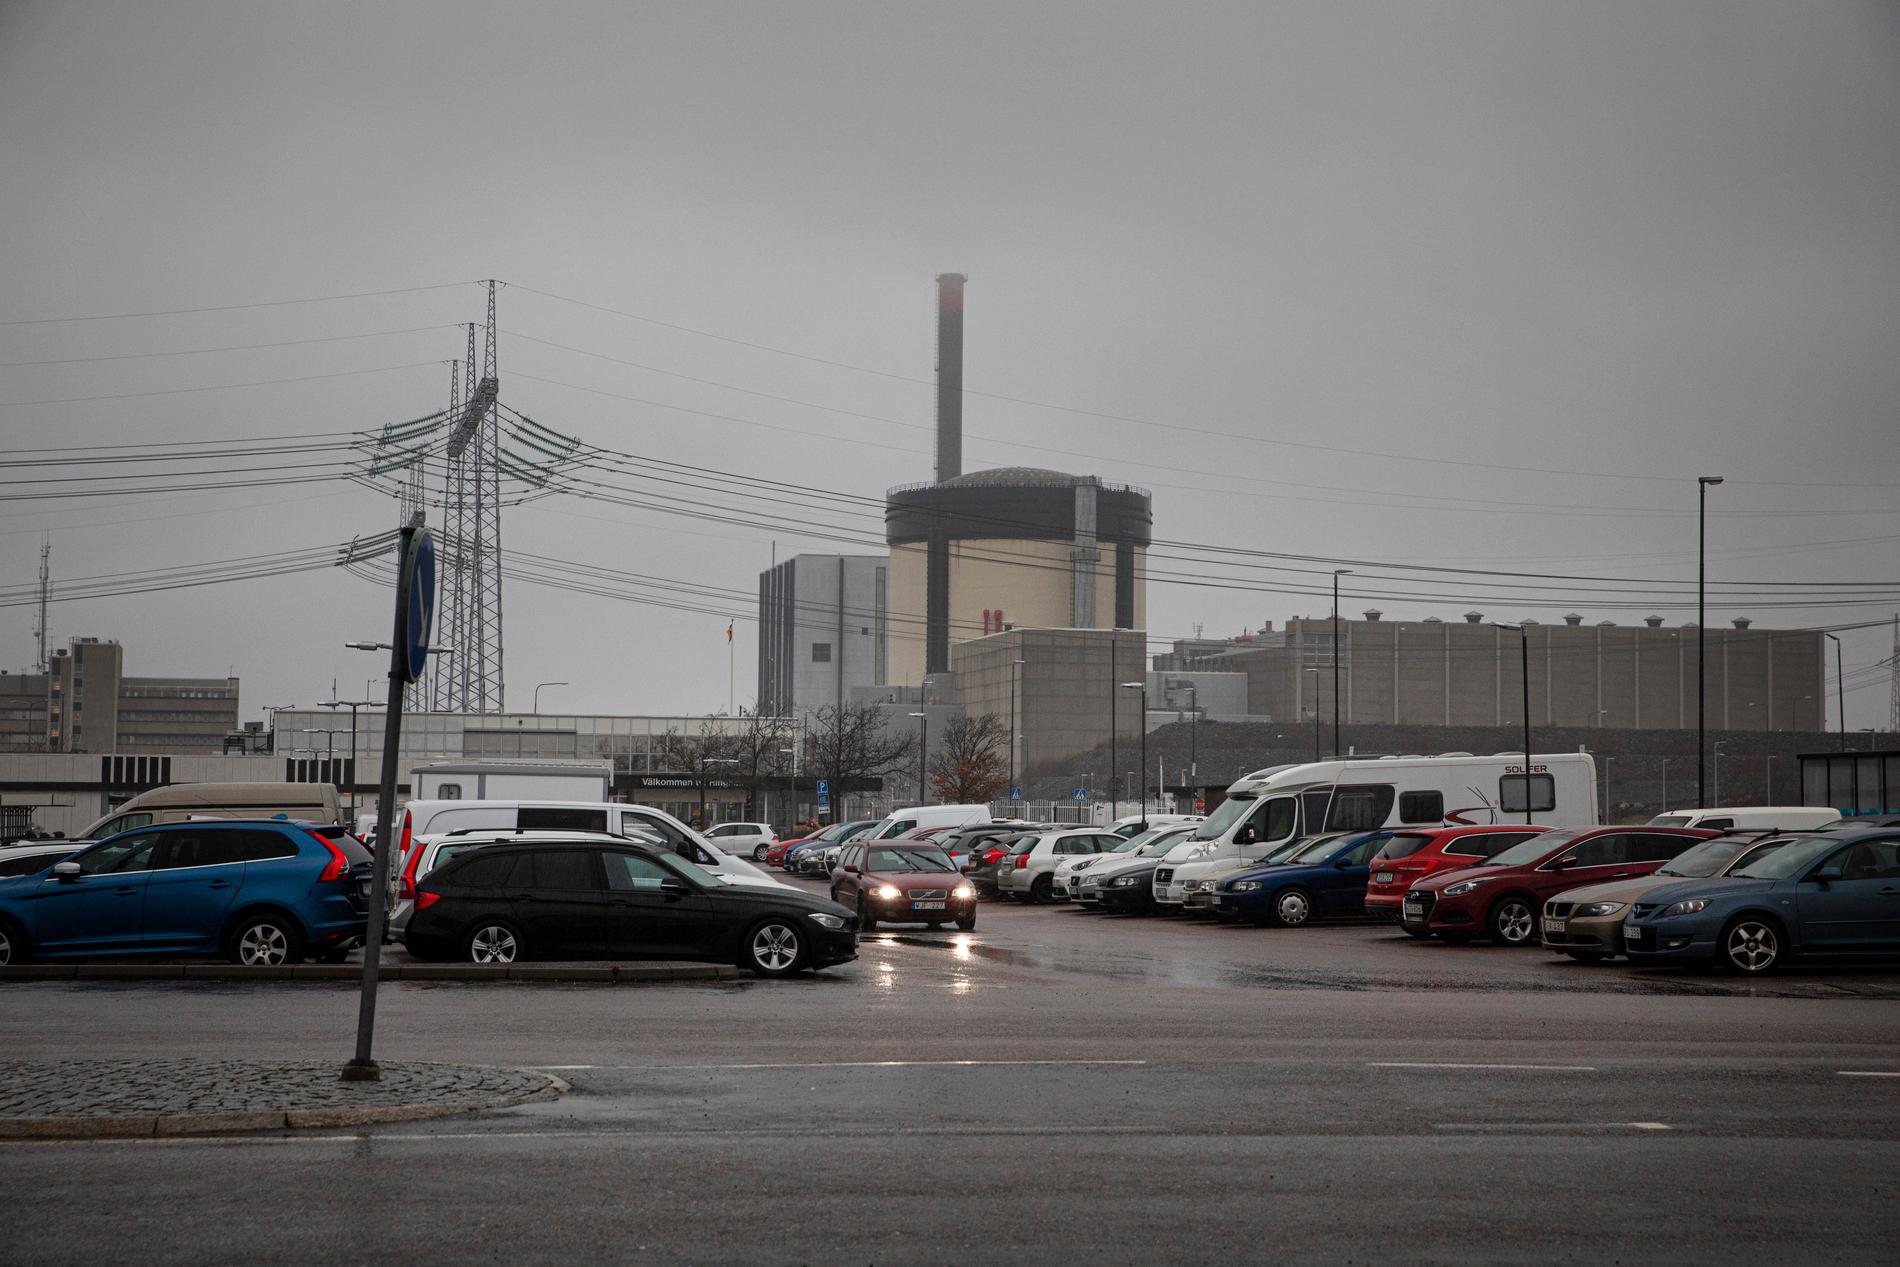 Ringhals kärnreaktor 3 snabbstoppades automatiskt i onsdags. Sedan dess har ett omfattande felsökningsarbete pågått. Arkivbild.